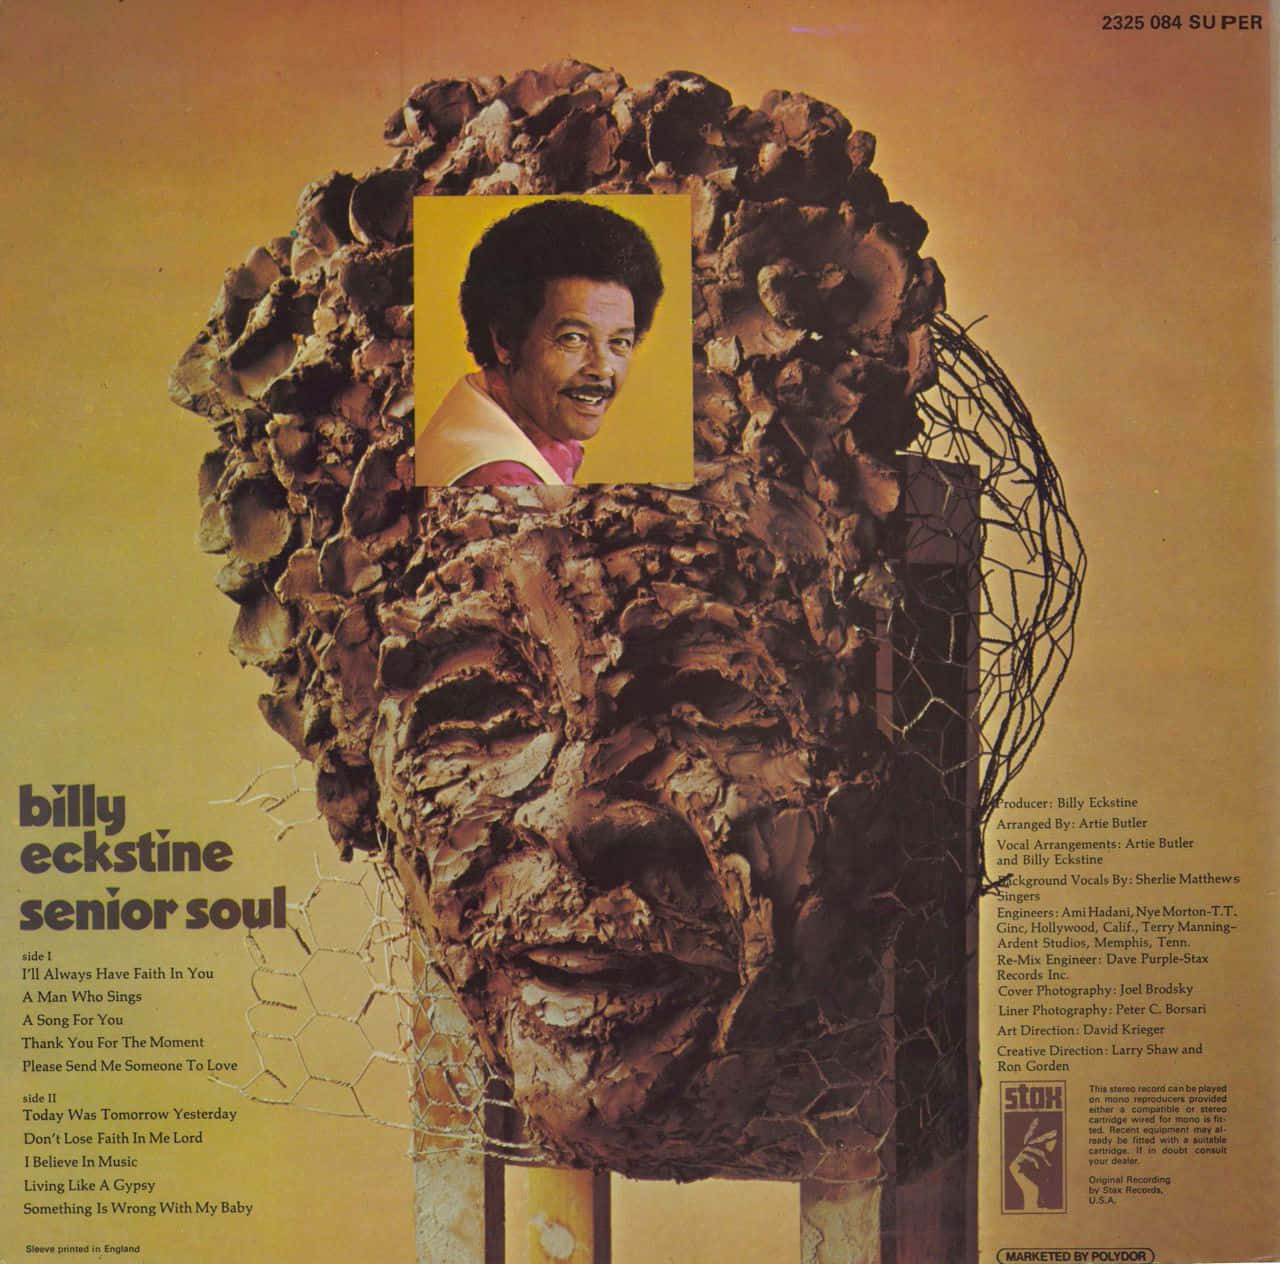 Billy Eckstine Senior Soul Vinyl Cover Wallpaper